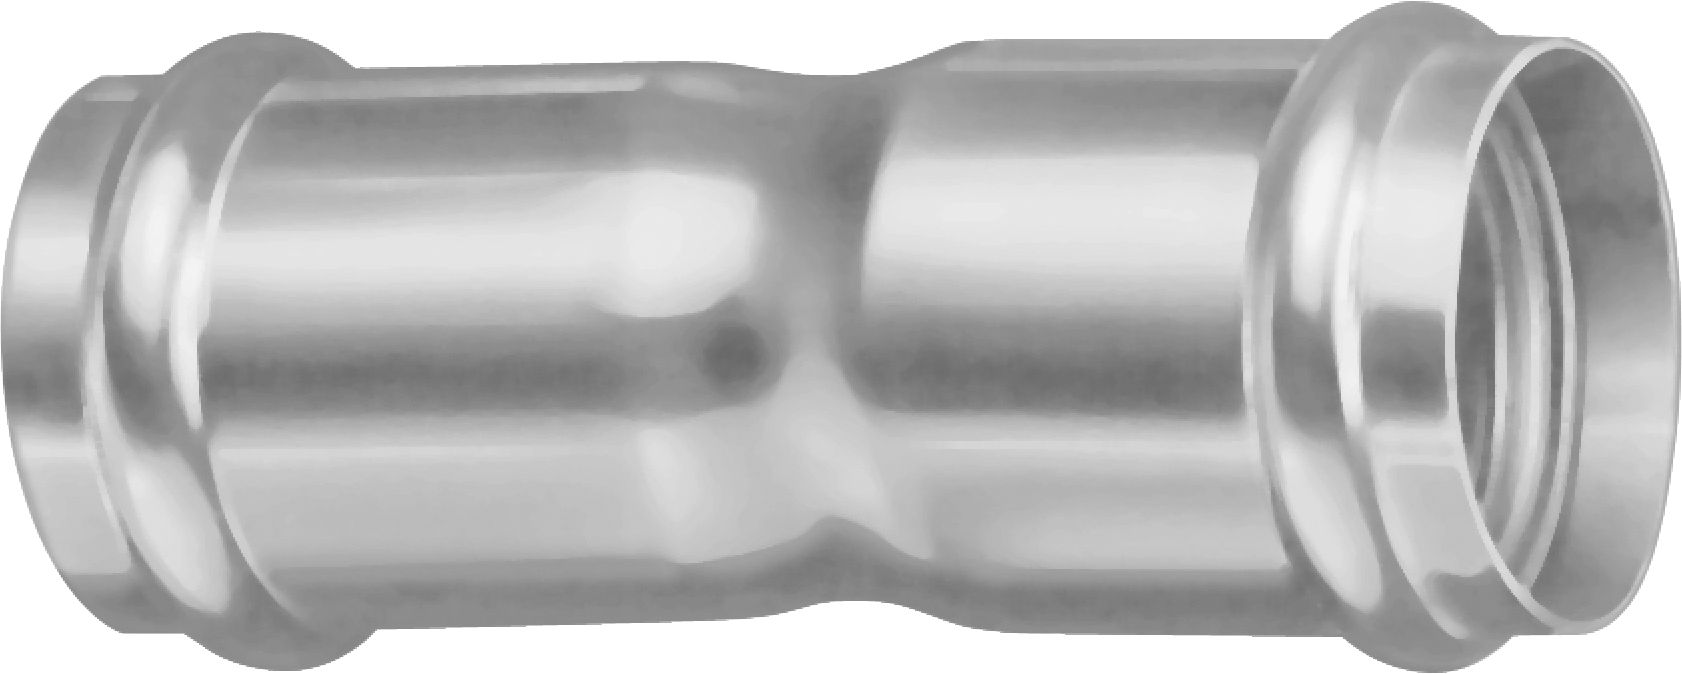 PE Kabelschutz Doppelmuffe NW: 214/195mm KRDM - Kabelschutz Formstücke spezial